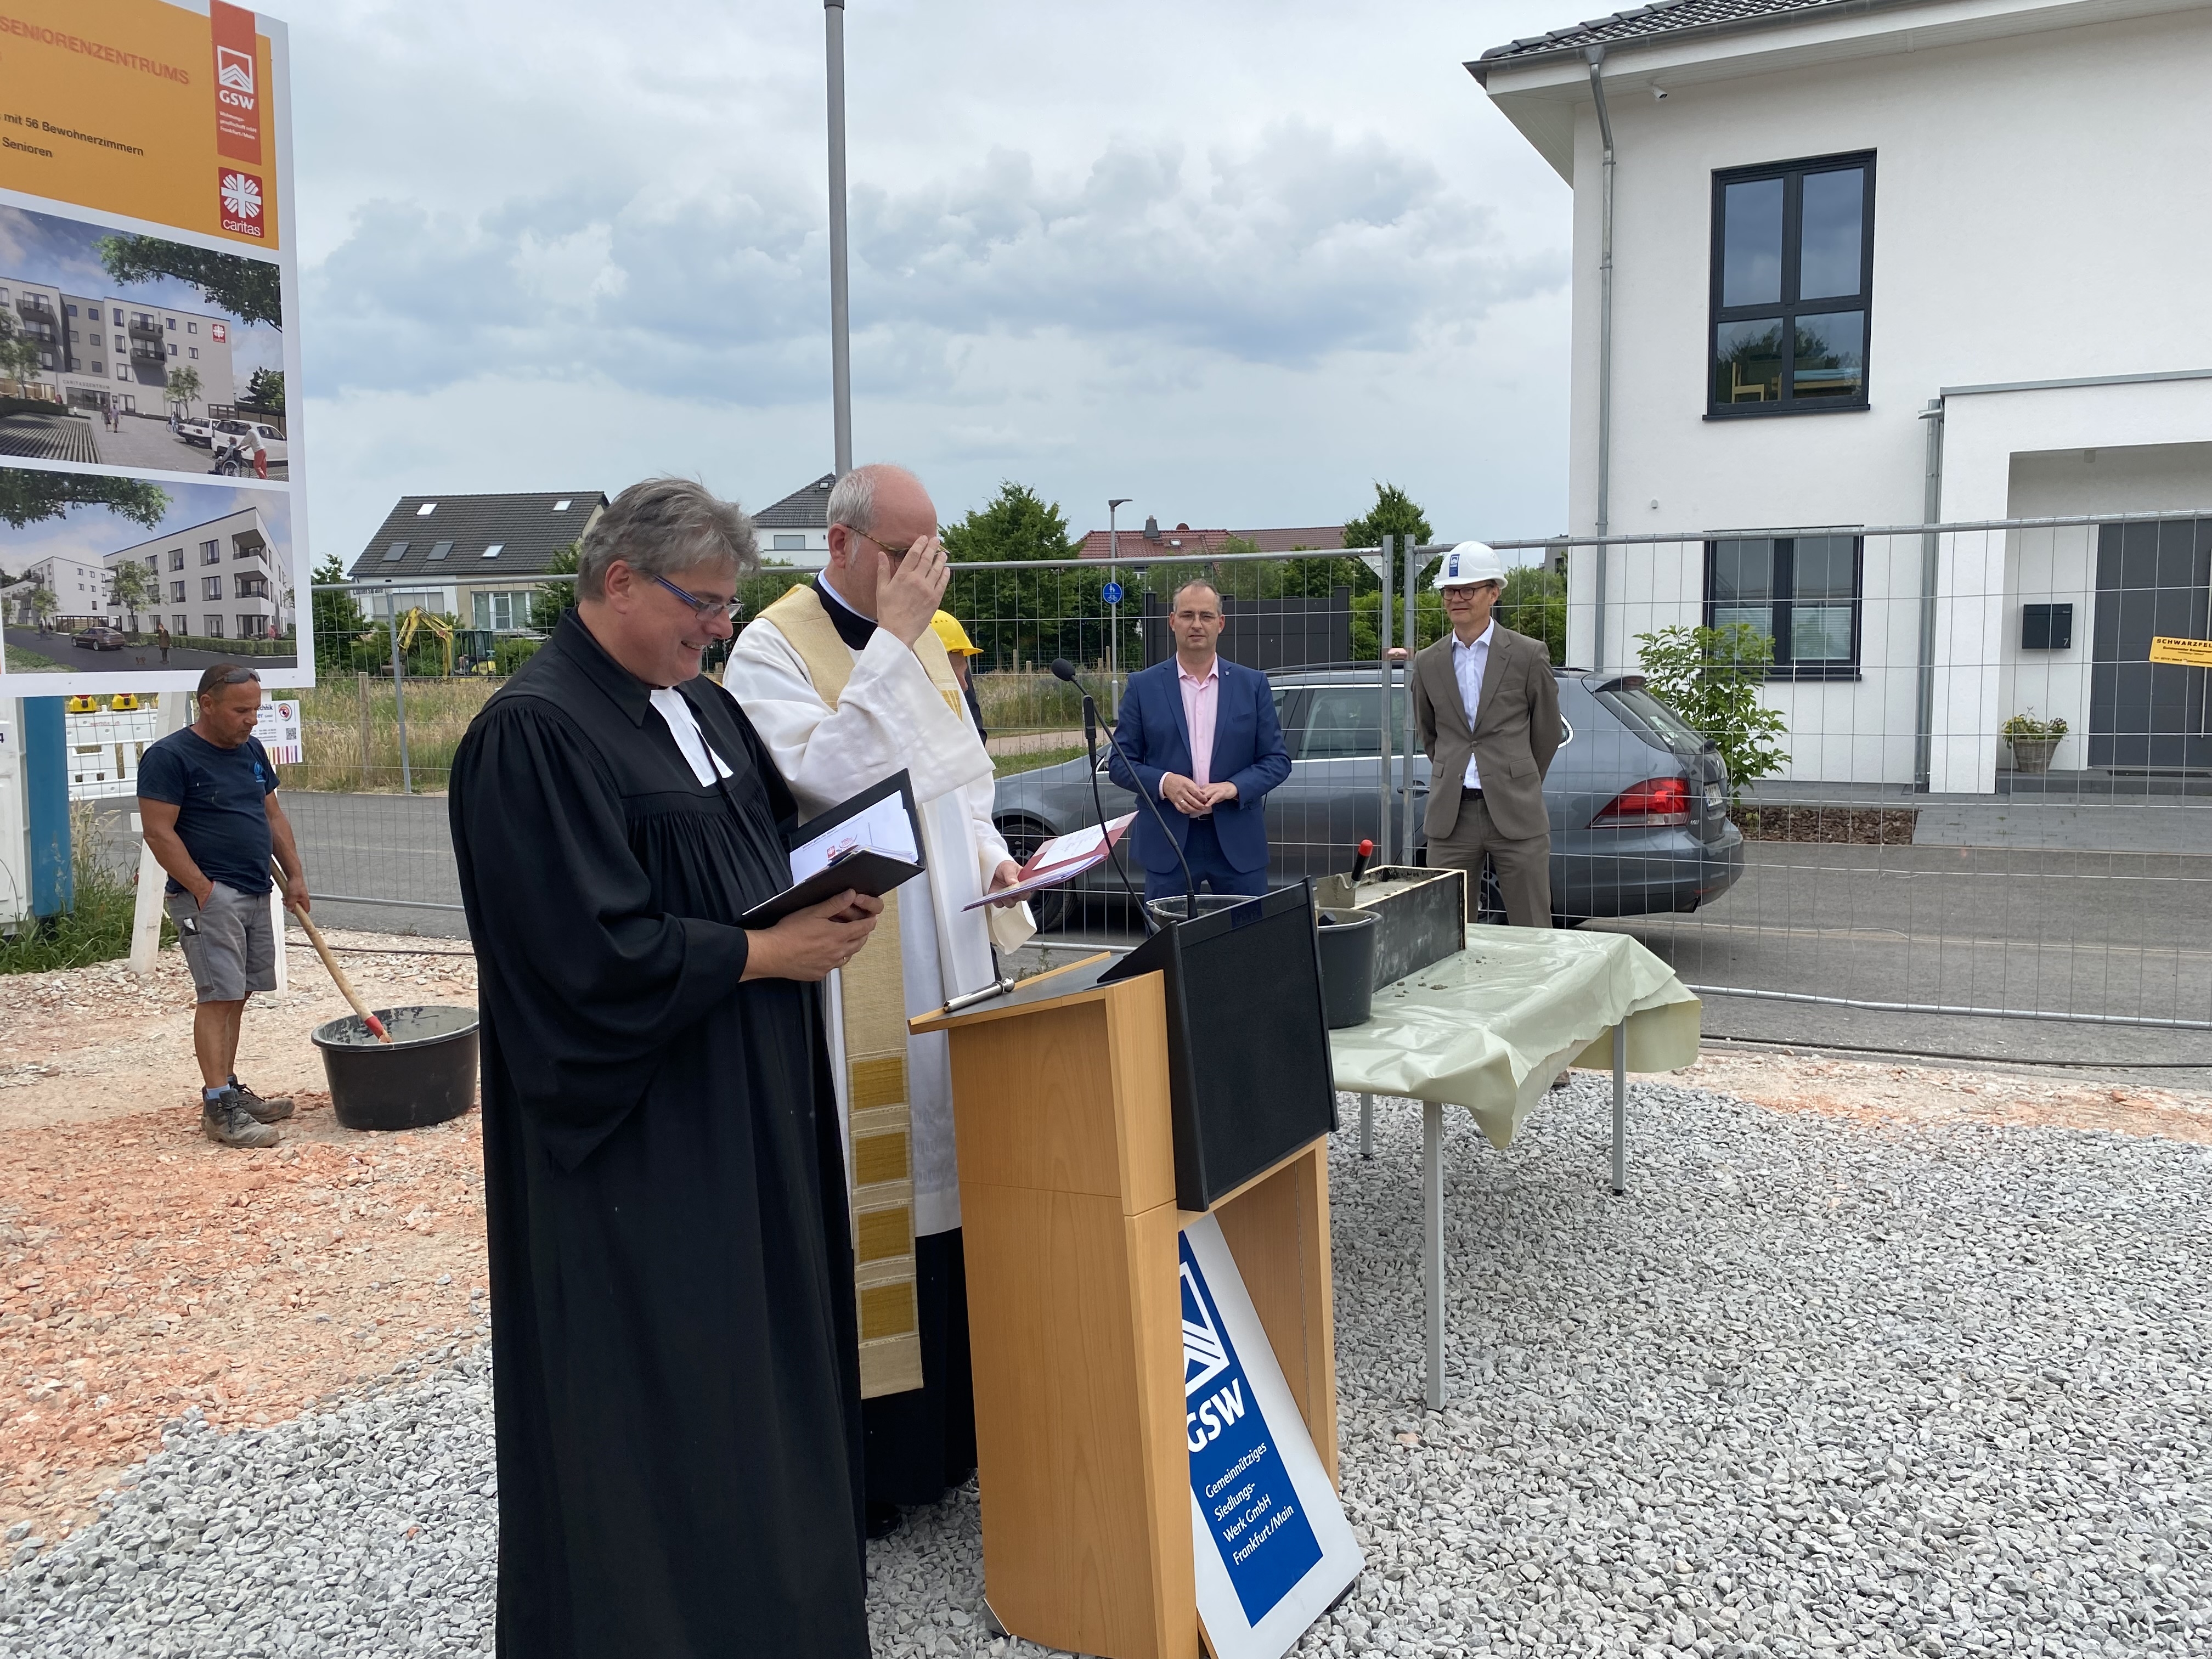 Zwei Pfarrer auf einer Baustelle (Caritasverband Darmstadt e. V.)